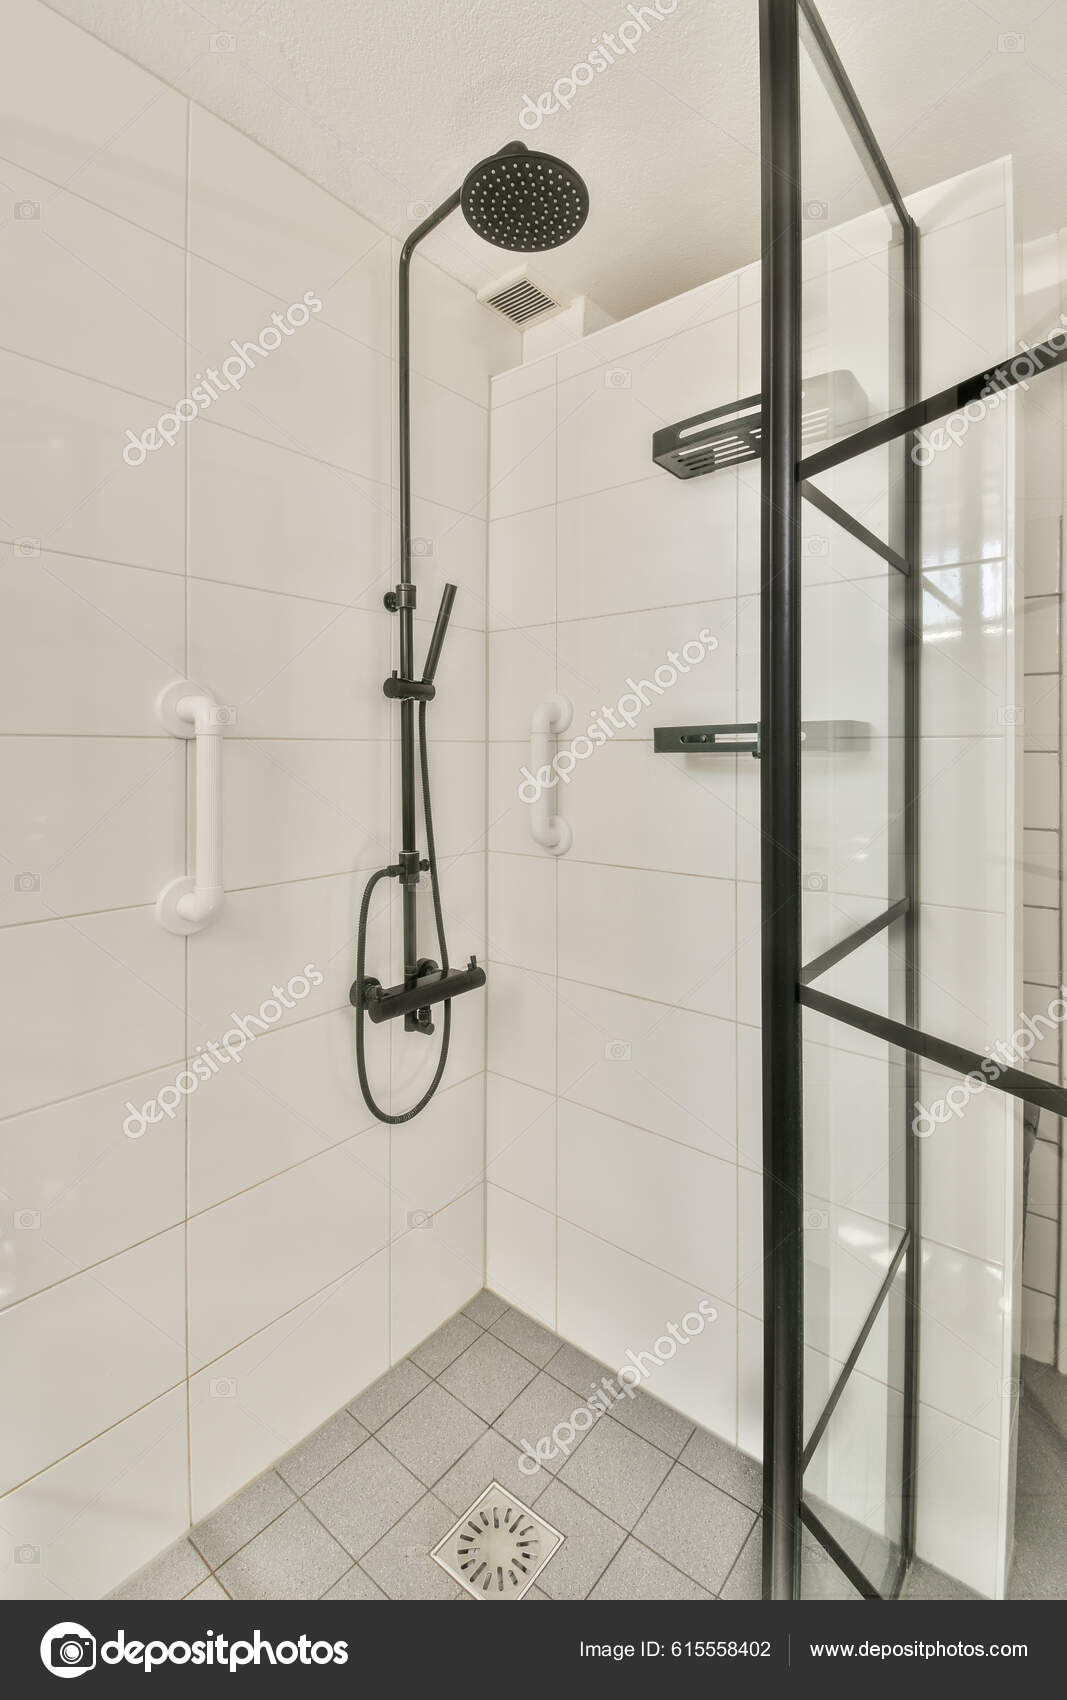 Tabique Vidrio Entre Grifo Ducha Inodoro Colgado Pared Baño Moderno:  fotografía de stock © procontributors #604033608